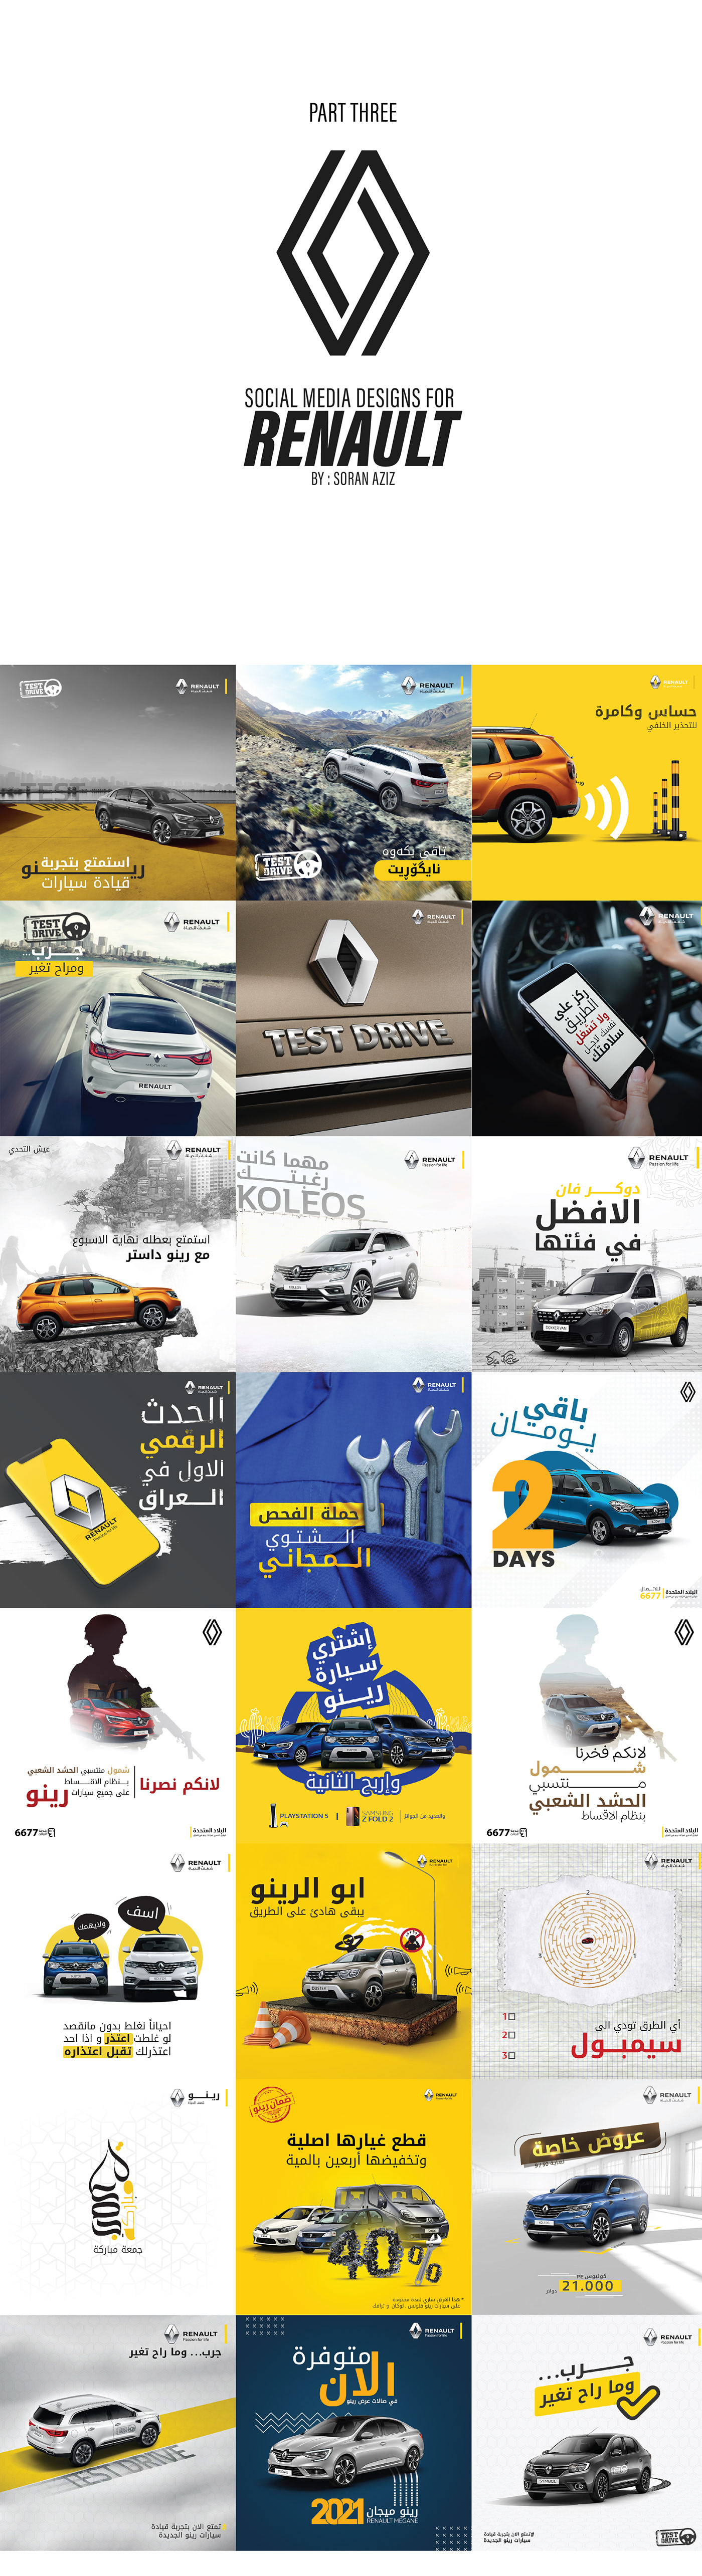 design car Advertising  marketing   Social media post ads campaign Socialmedia post